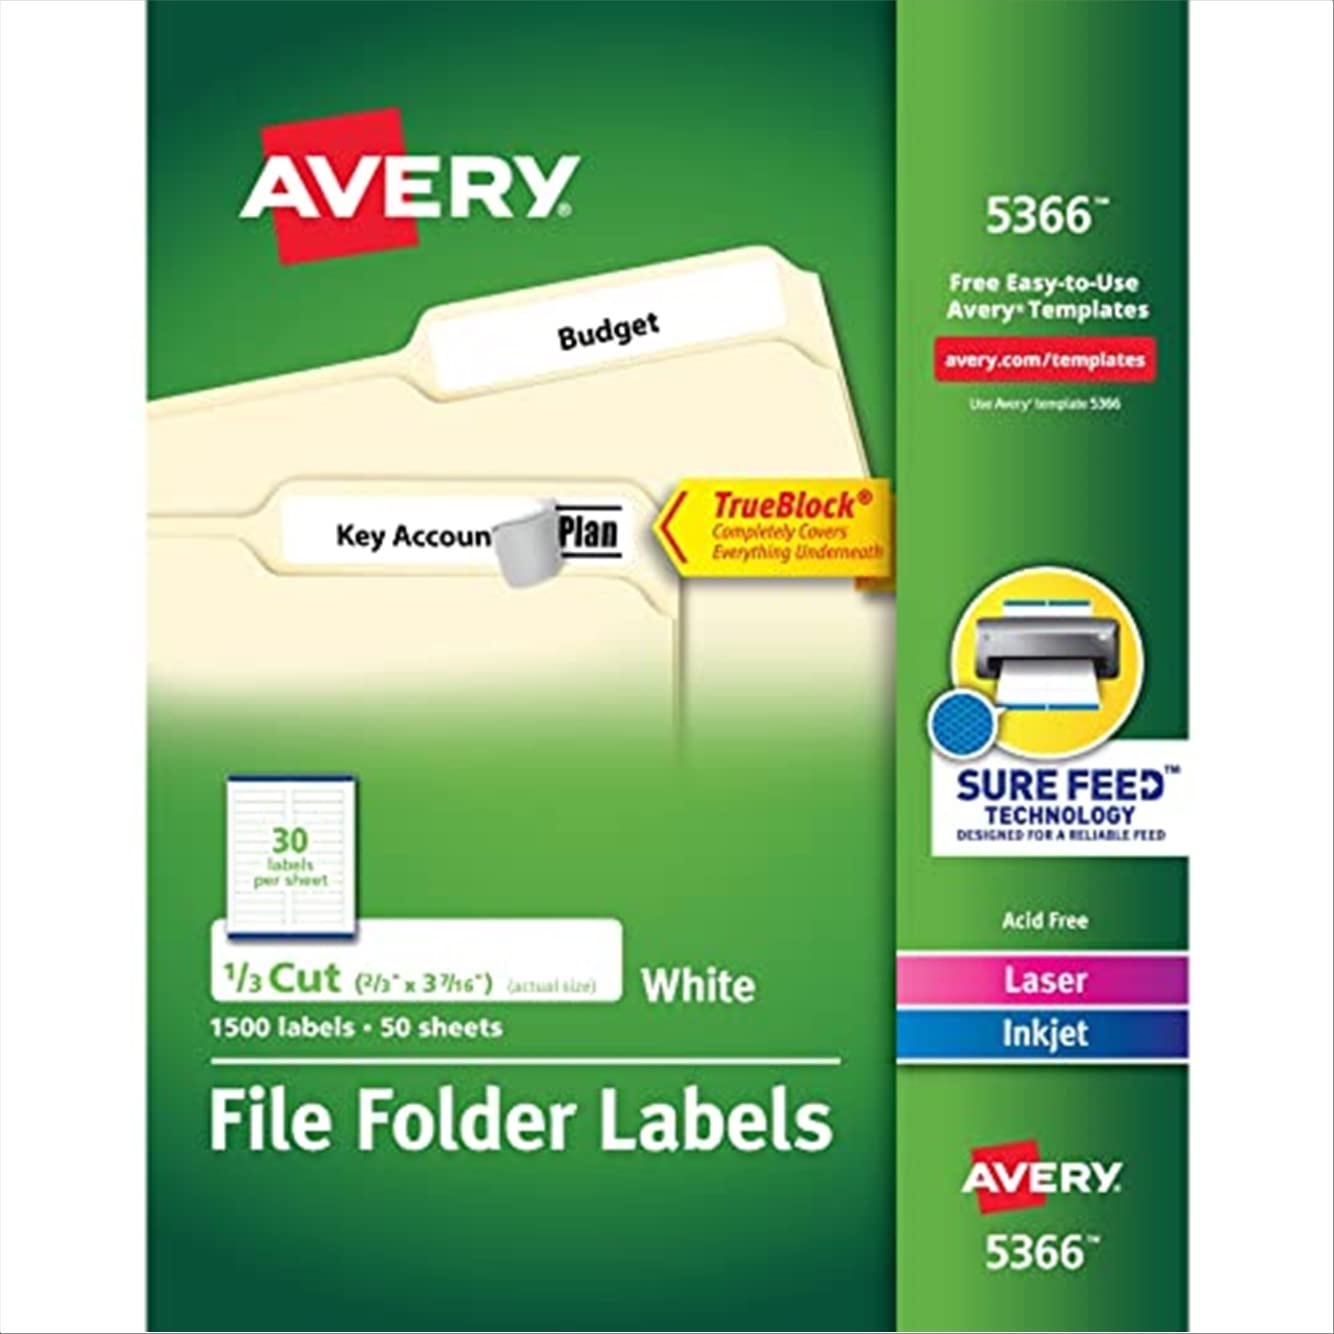 Avery Etiquetas de pasta de arquivo para impressoras a laser e jato de tinta com tecnologia TrueBlock